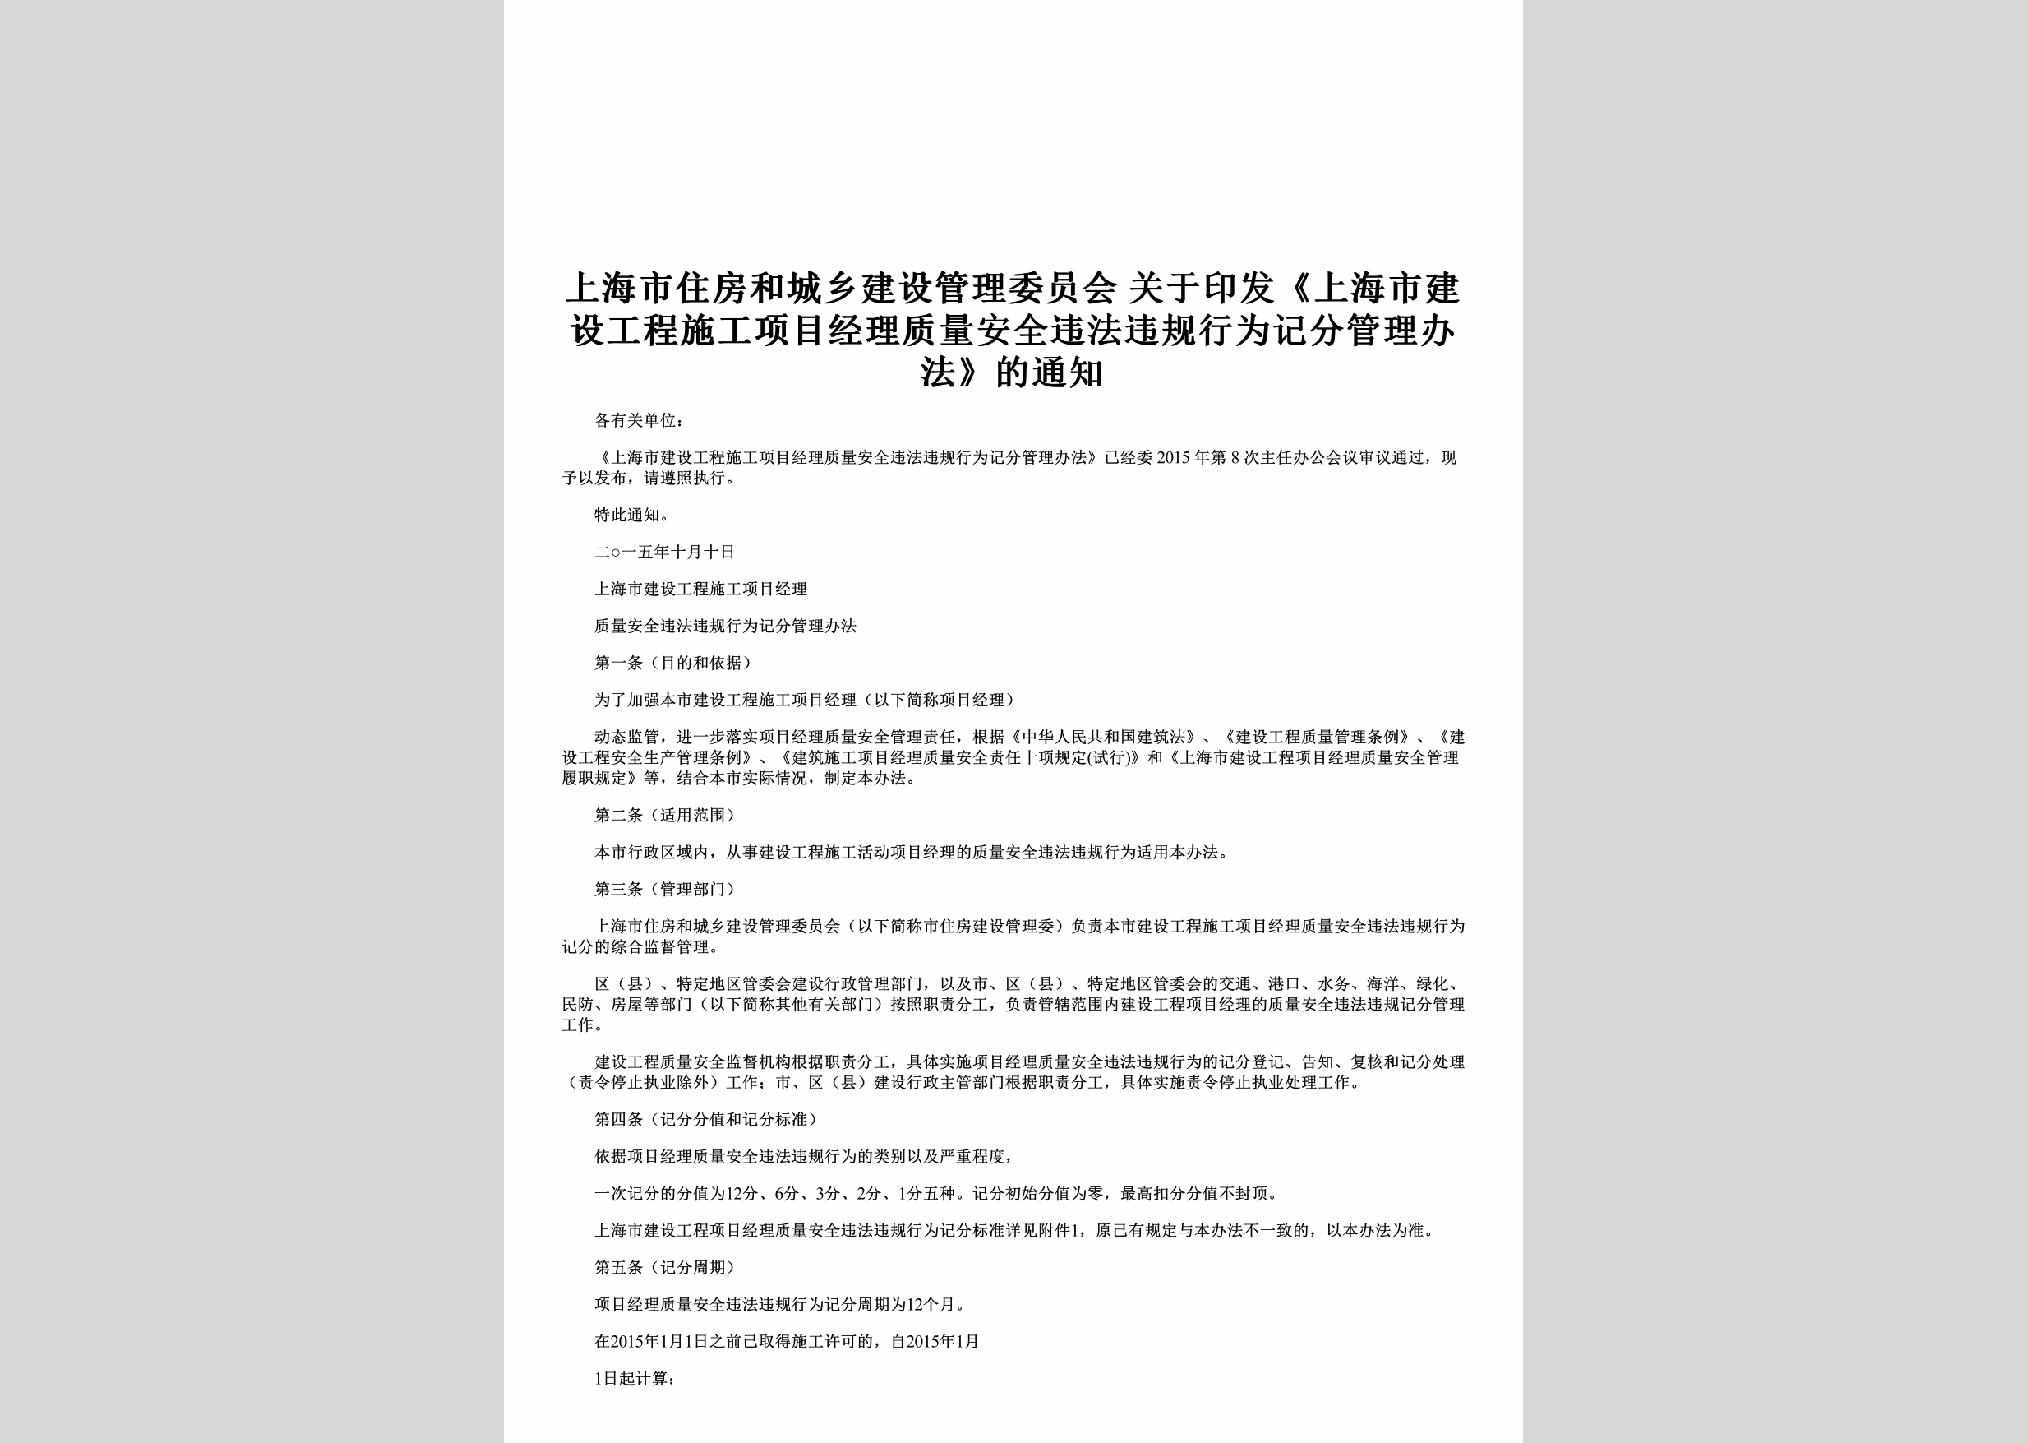 SH-ZLAQGLTZ-2015：关于印发《上海市建设工程施工项目经理质量安全违法违规行为记分管理办法》的通知